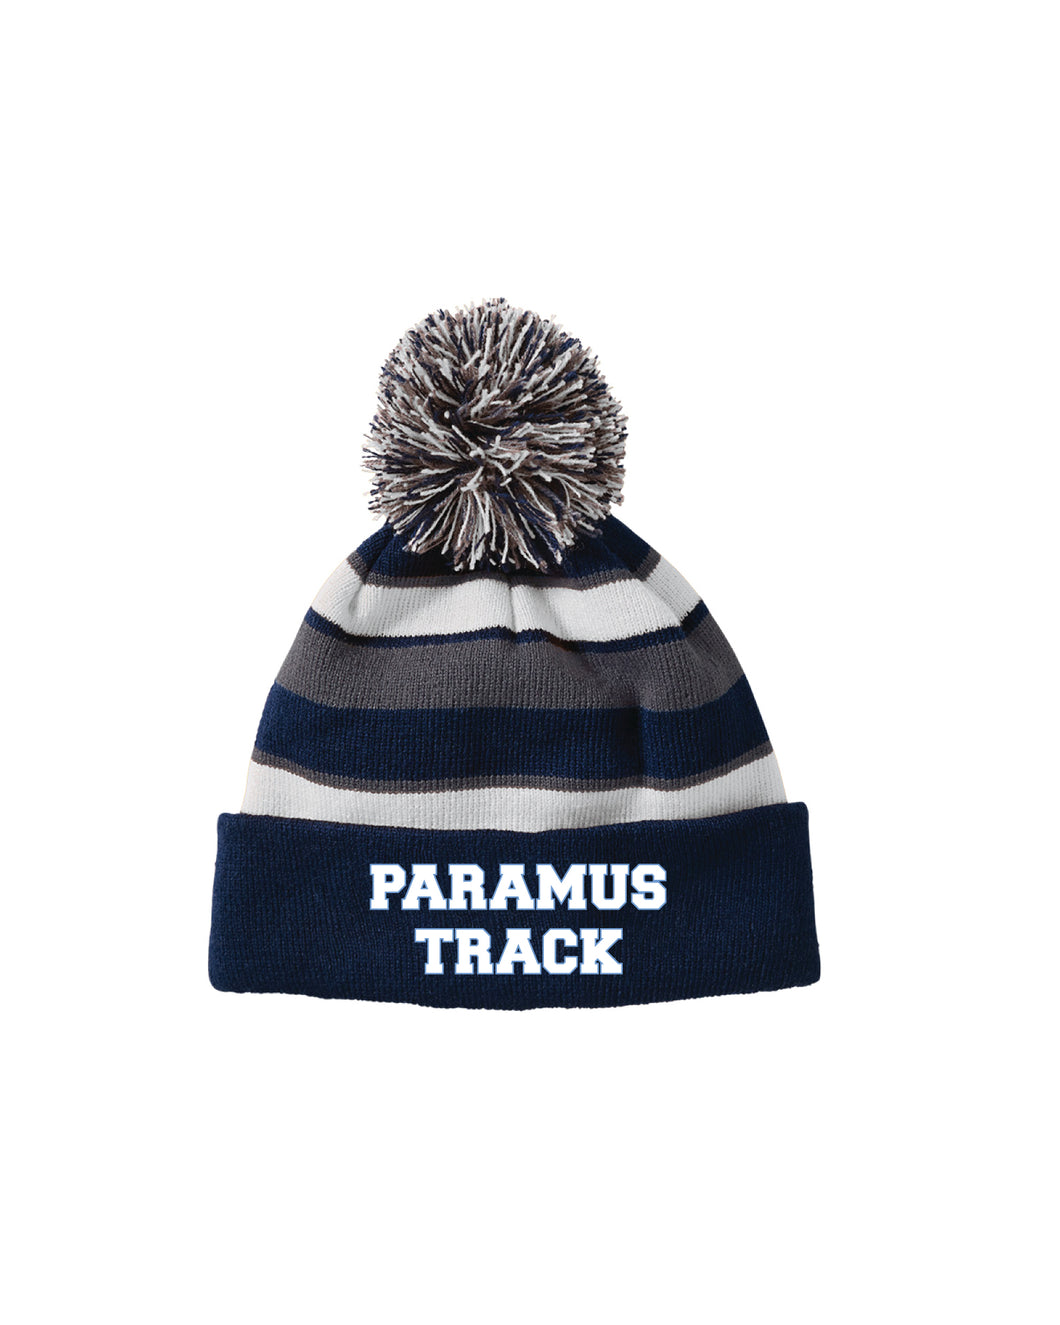 Paramus Track Pom Beanie - Navy - 5KounT2018